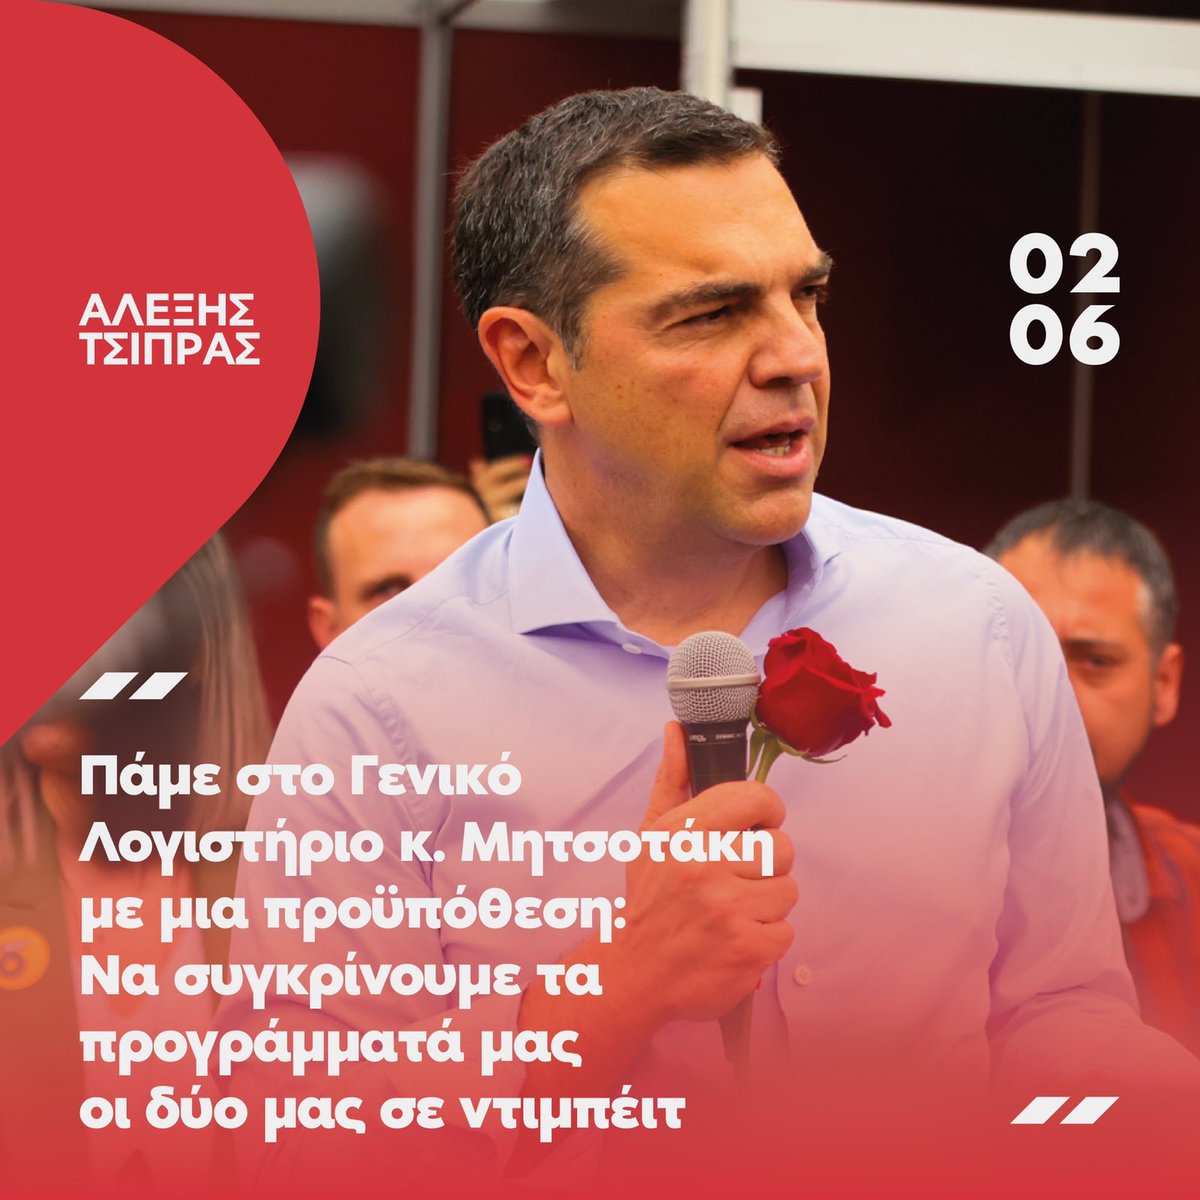 #Mασάει η κατσίκα ταραμά?...#ΡΕ ταραμά@atsipras? #Εκλογες25Ιουνιου